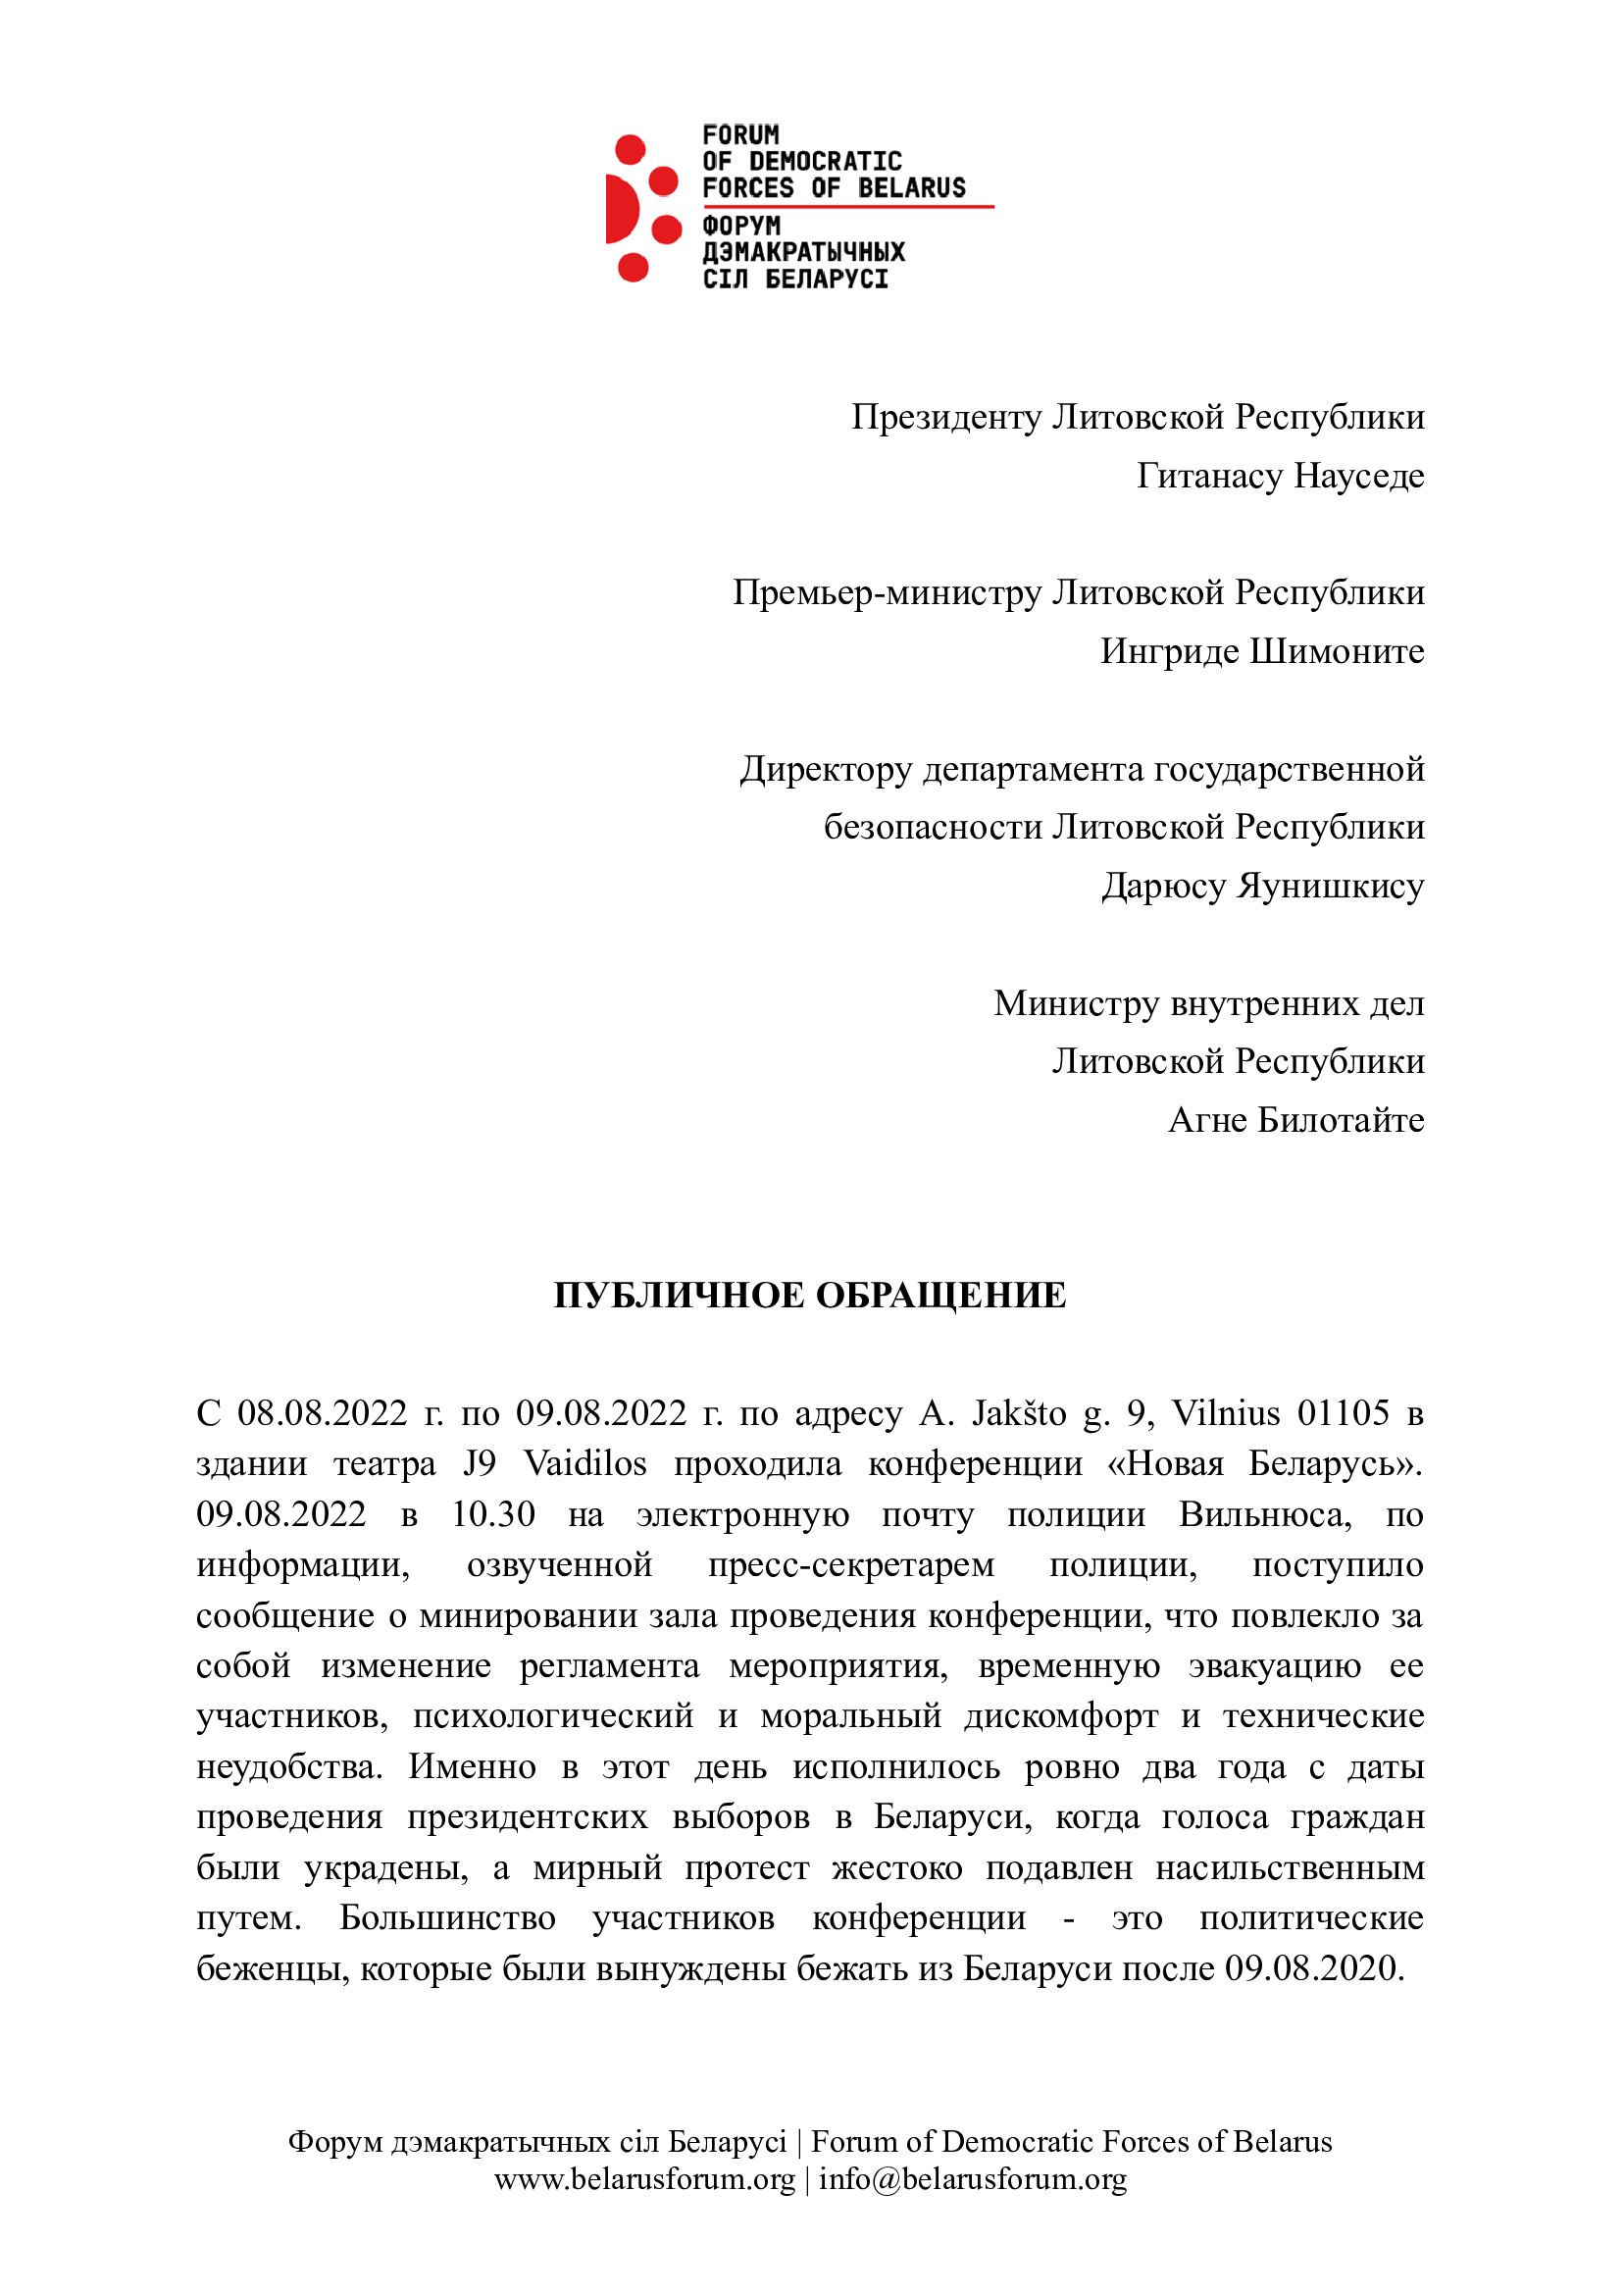 Обращение в связи с сообщением о минировании 9 августа в Вильнюсе